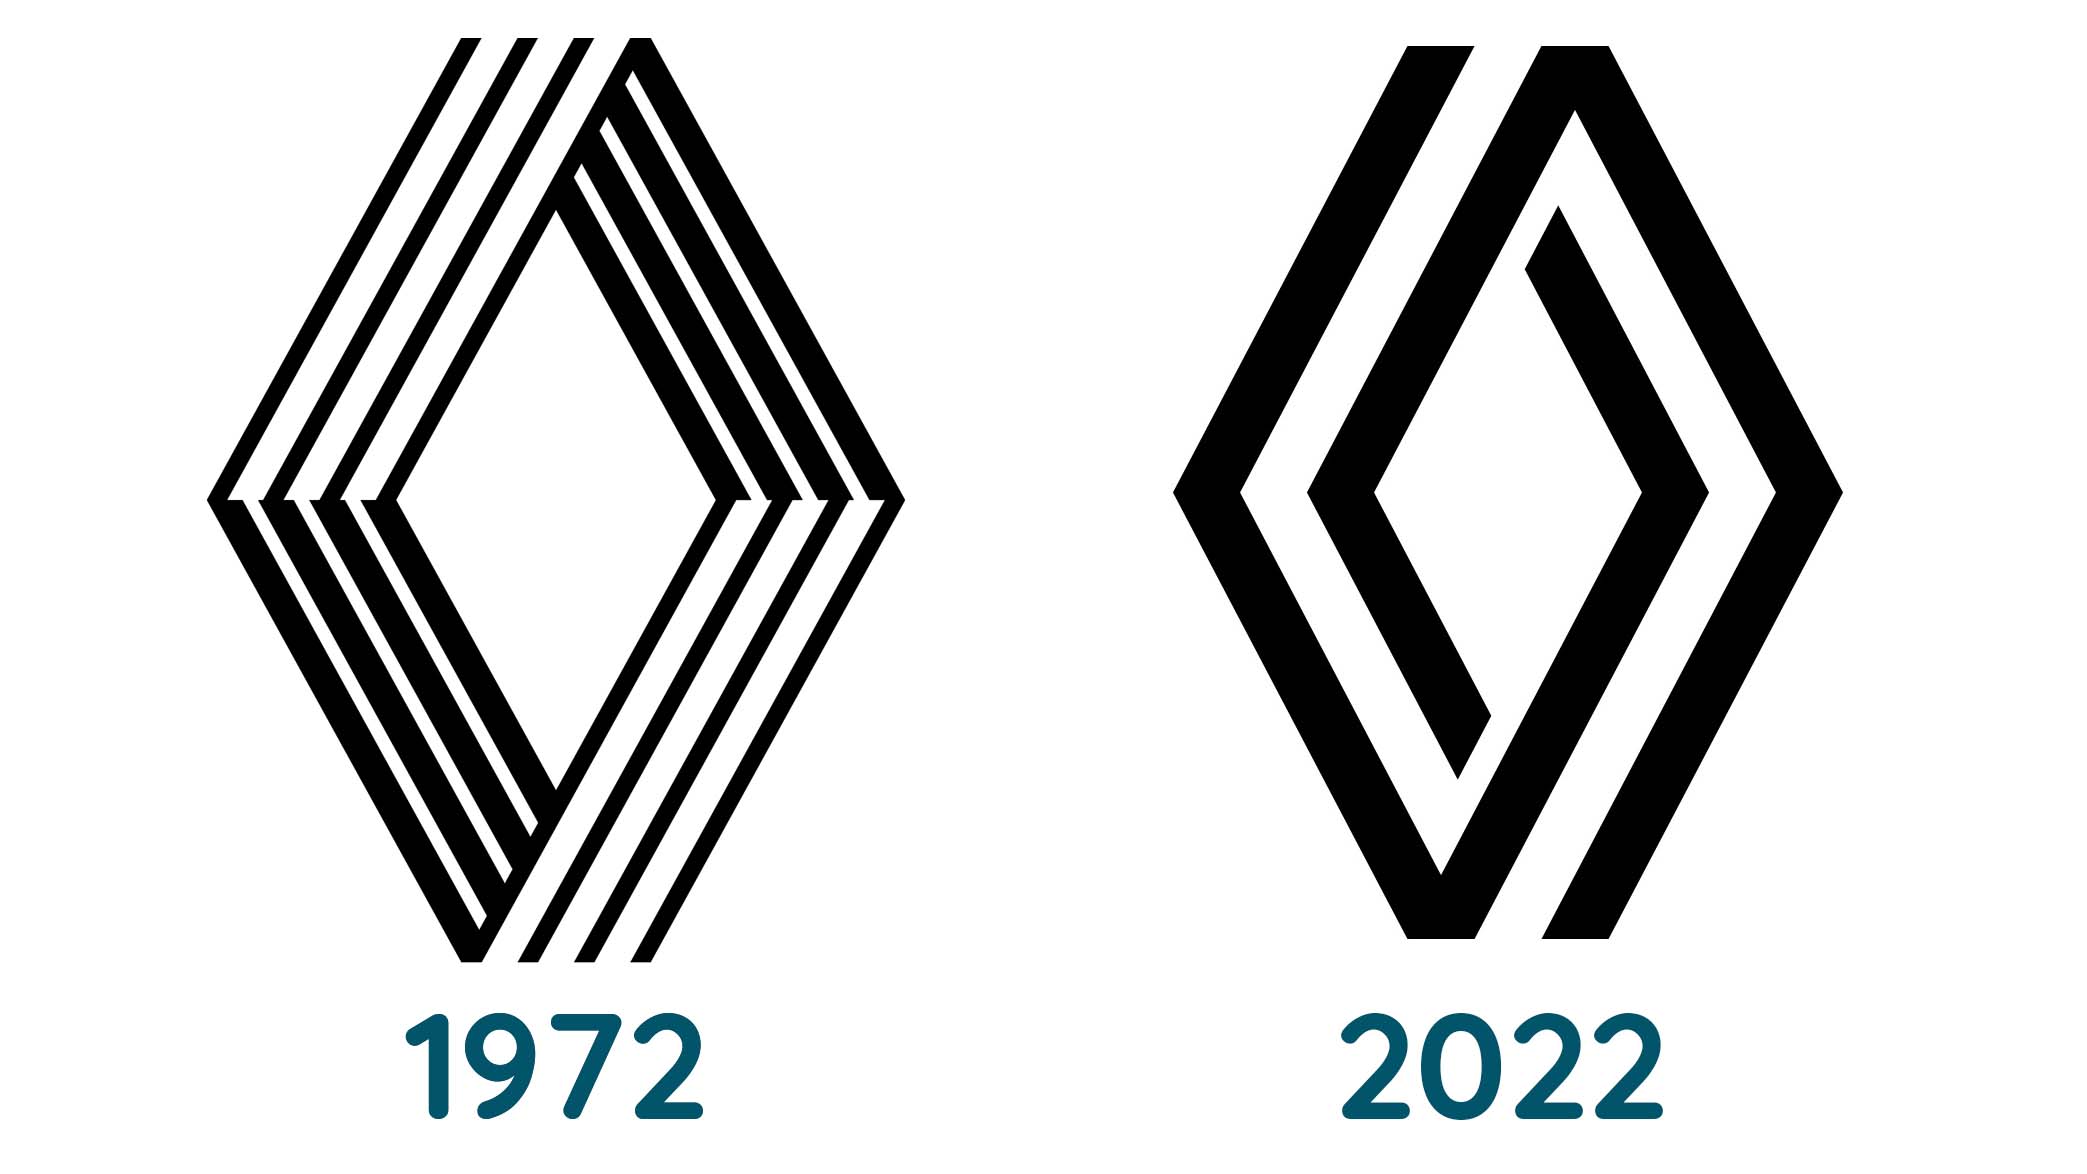 Comparaison entre les logos Renault de 1972 et de 2022